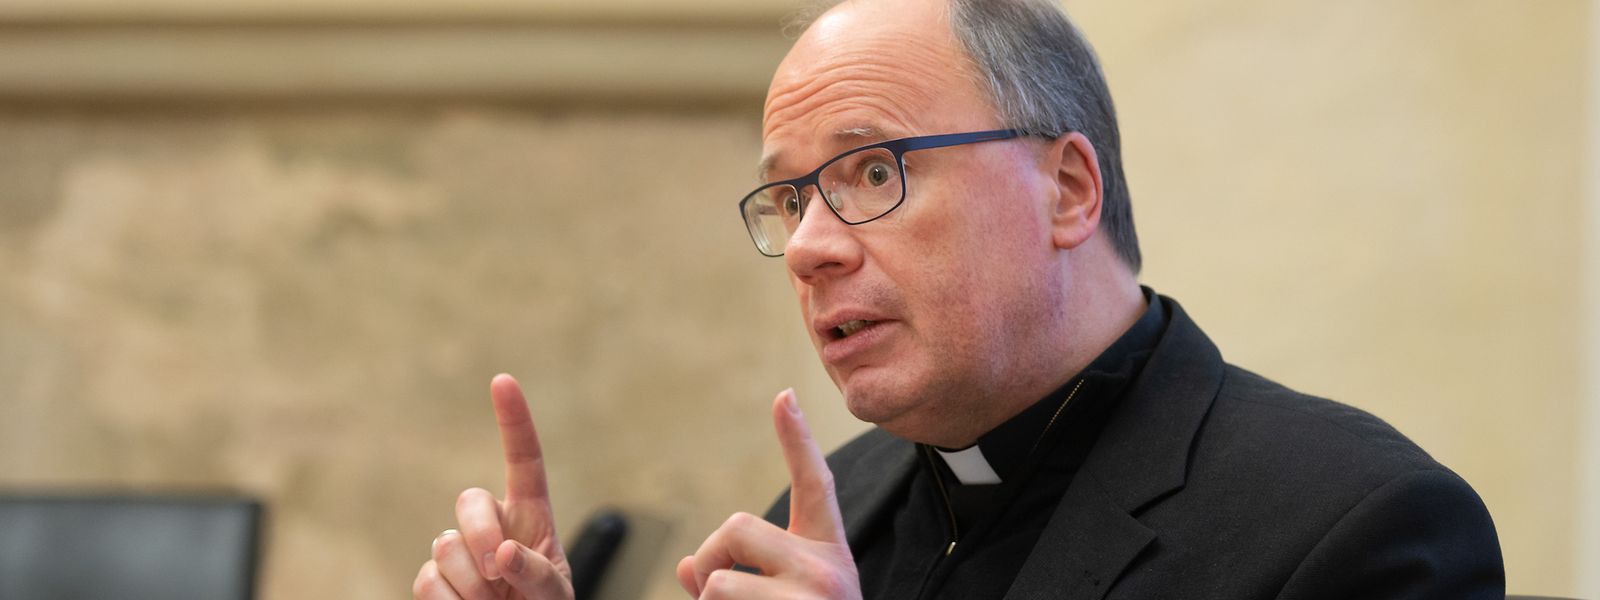 Der Trierer Bischof Stephan Ackermann erwartet hohe Entschädigungsforderungen.